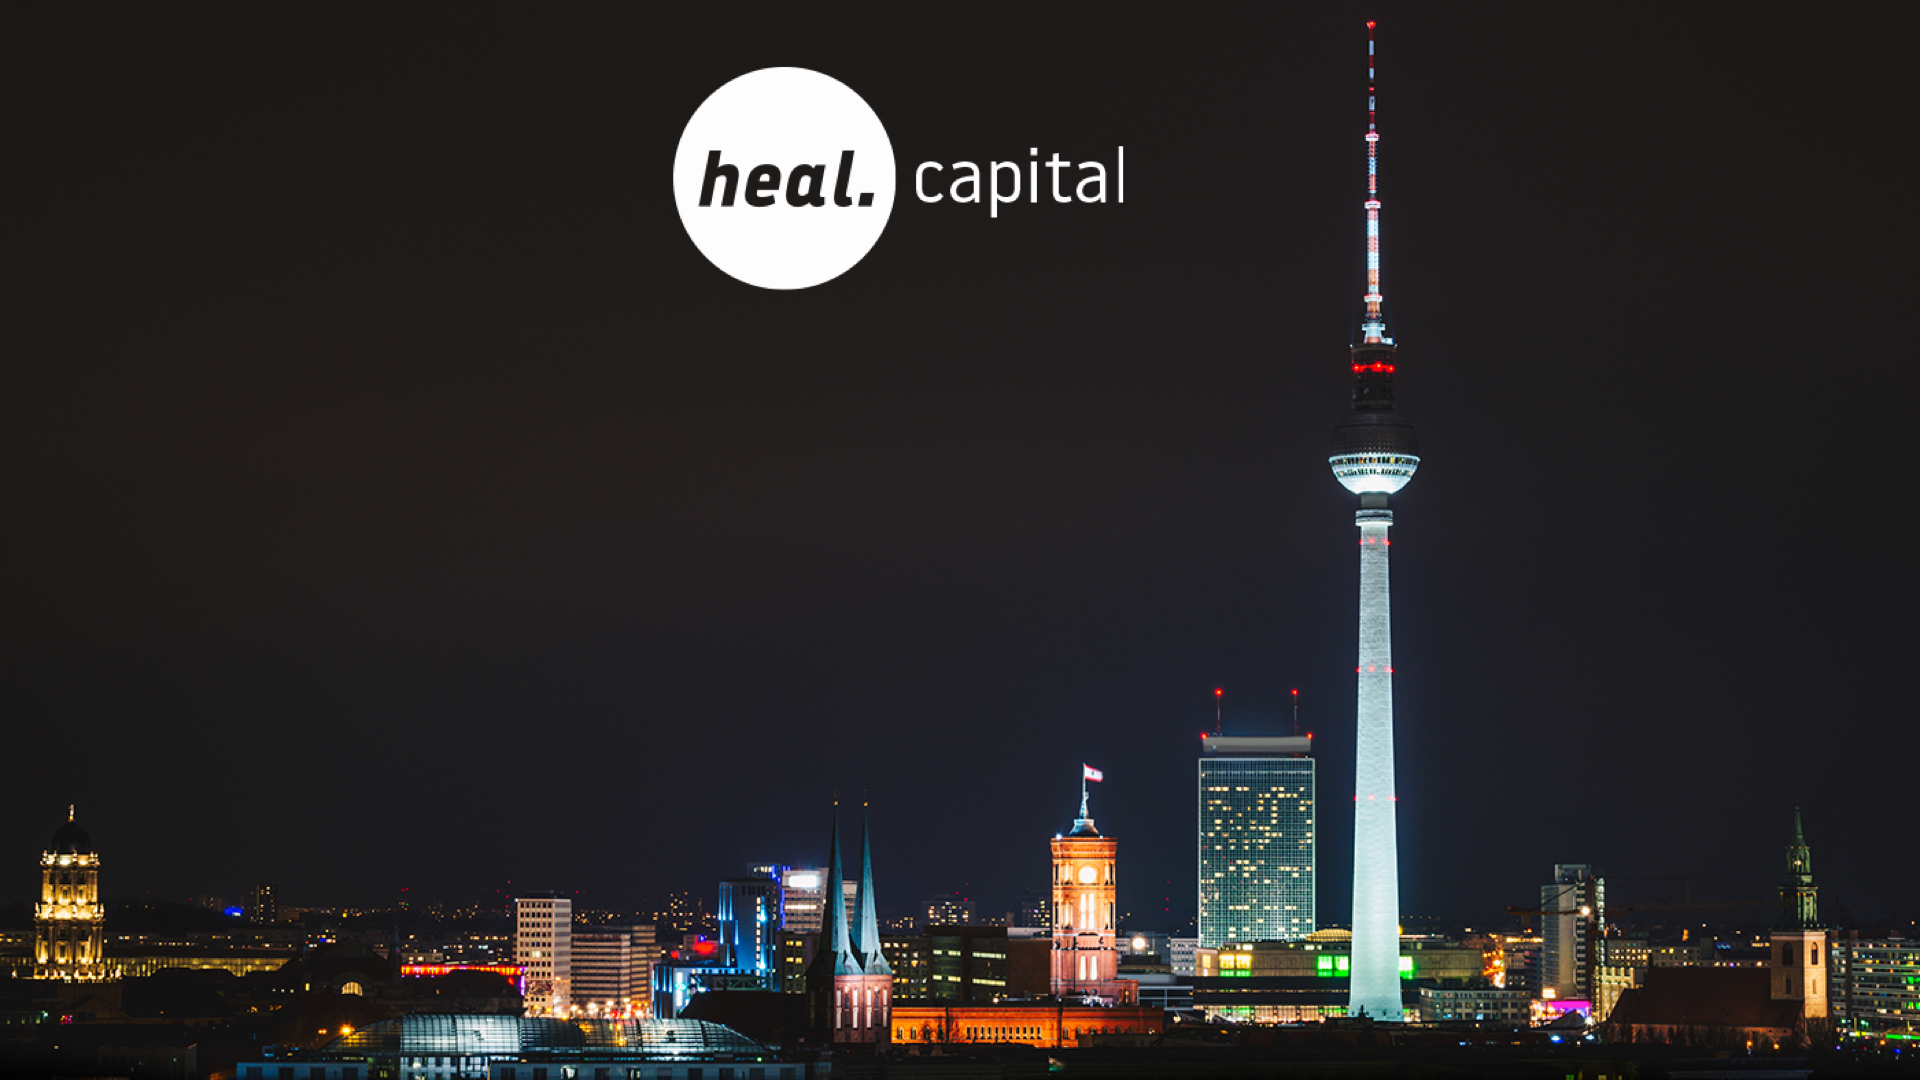 Heal Capital